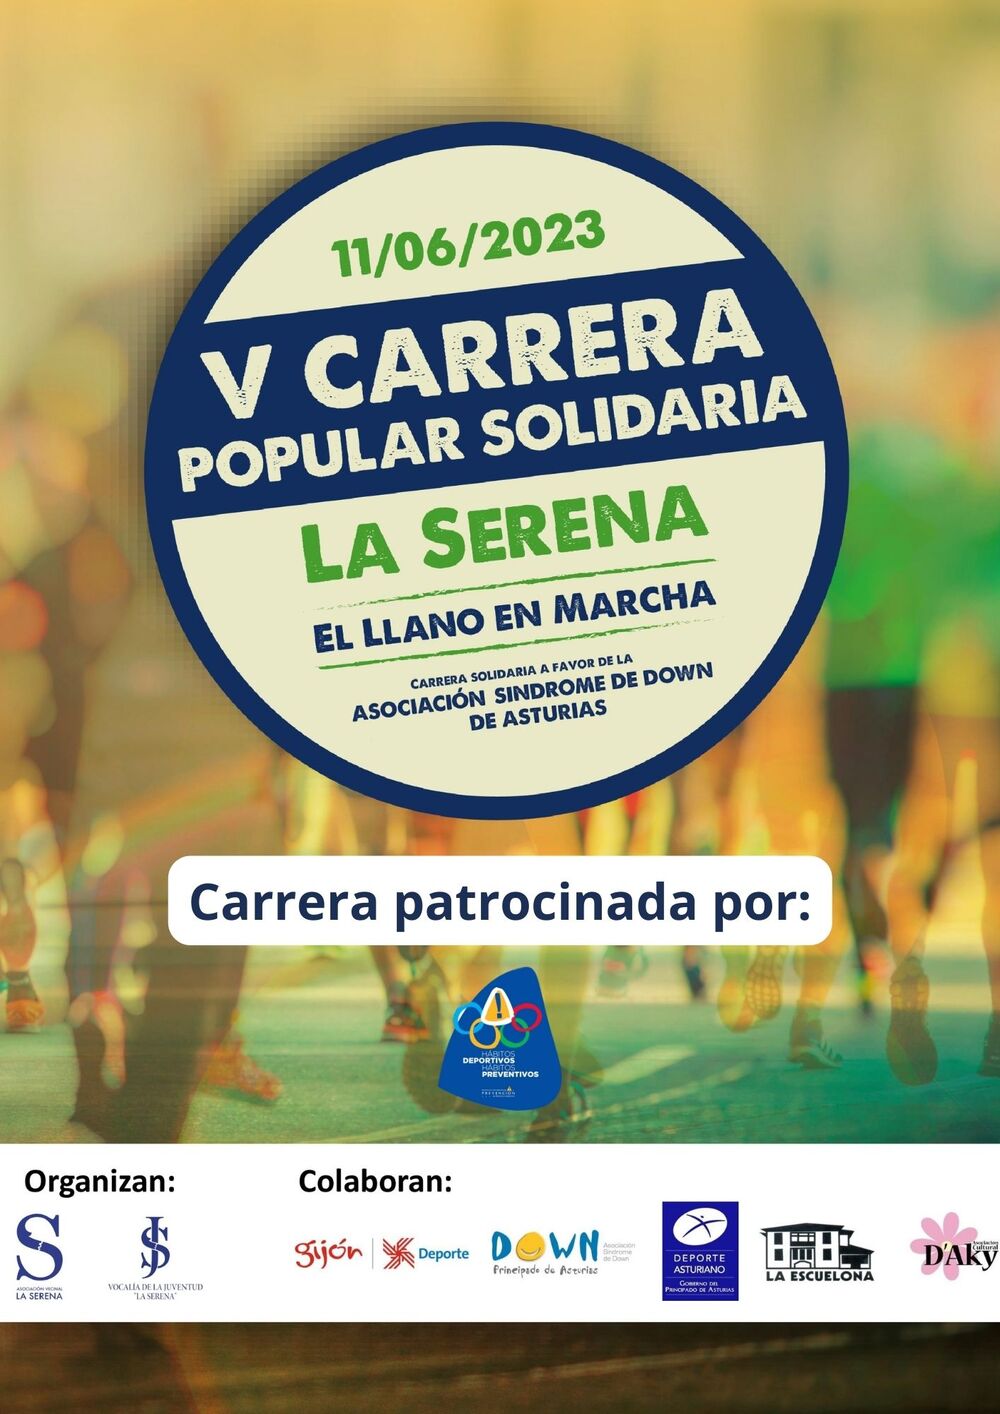 V Carrera Popular Solidaria La Serena - El Llano en Marcha